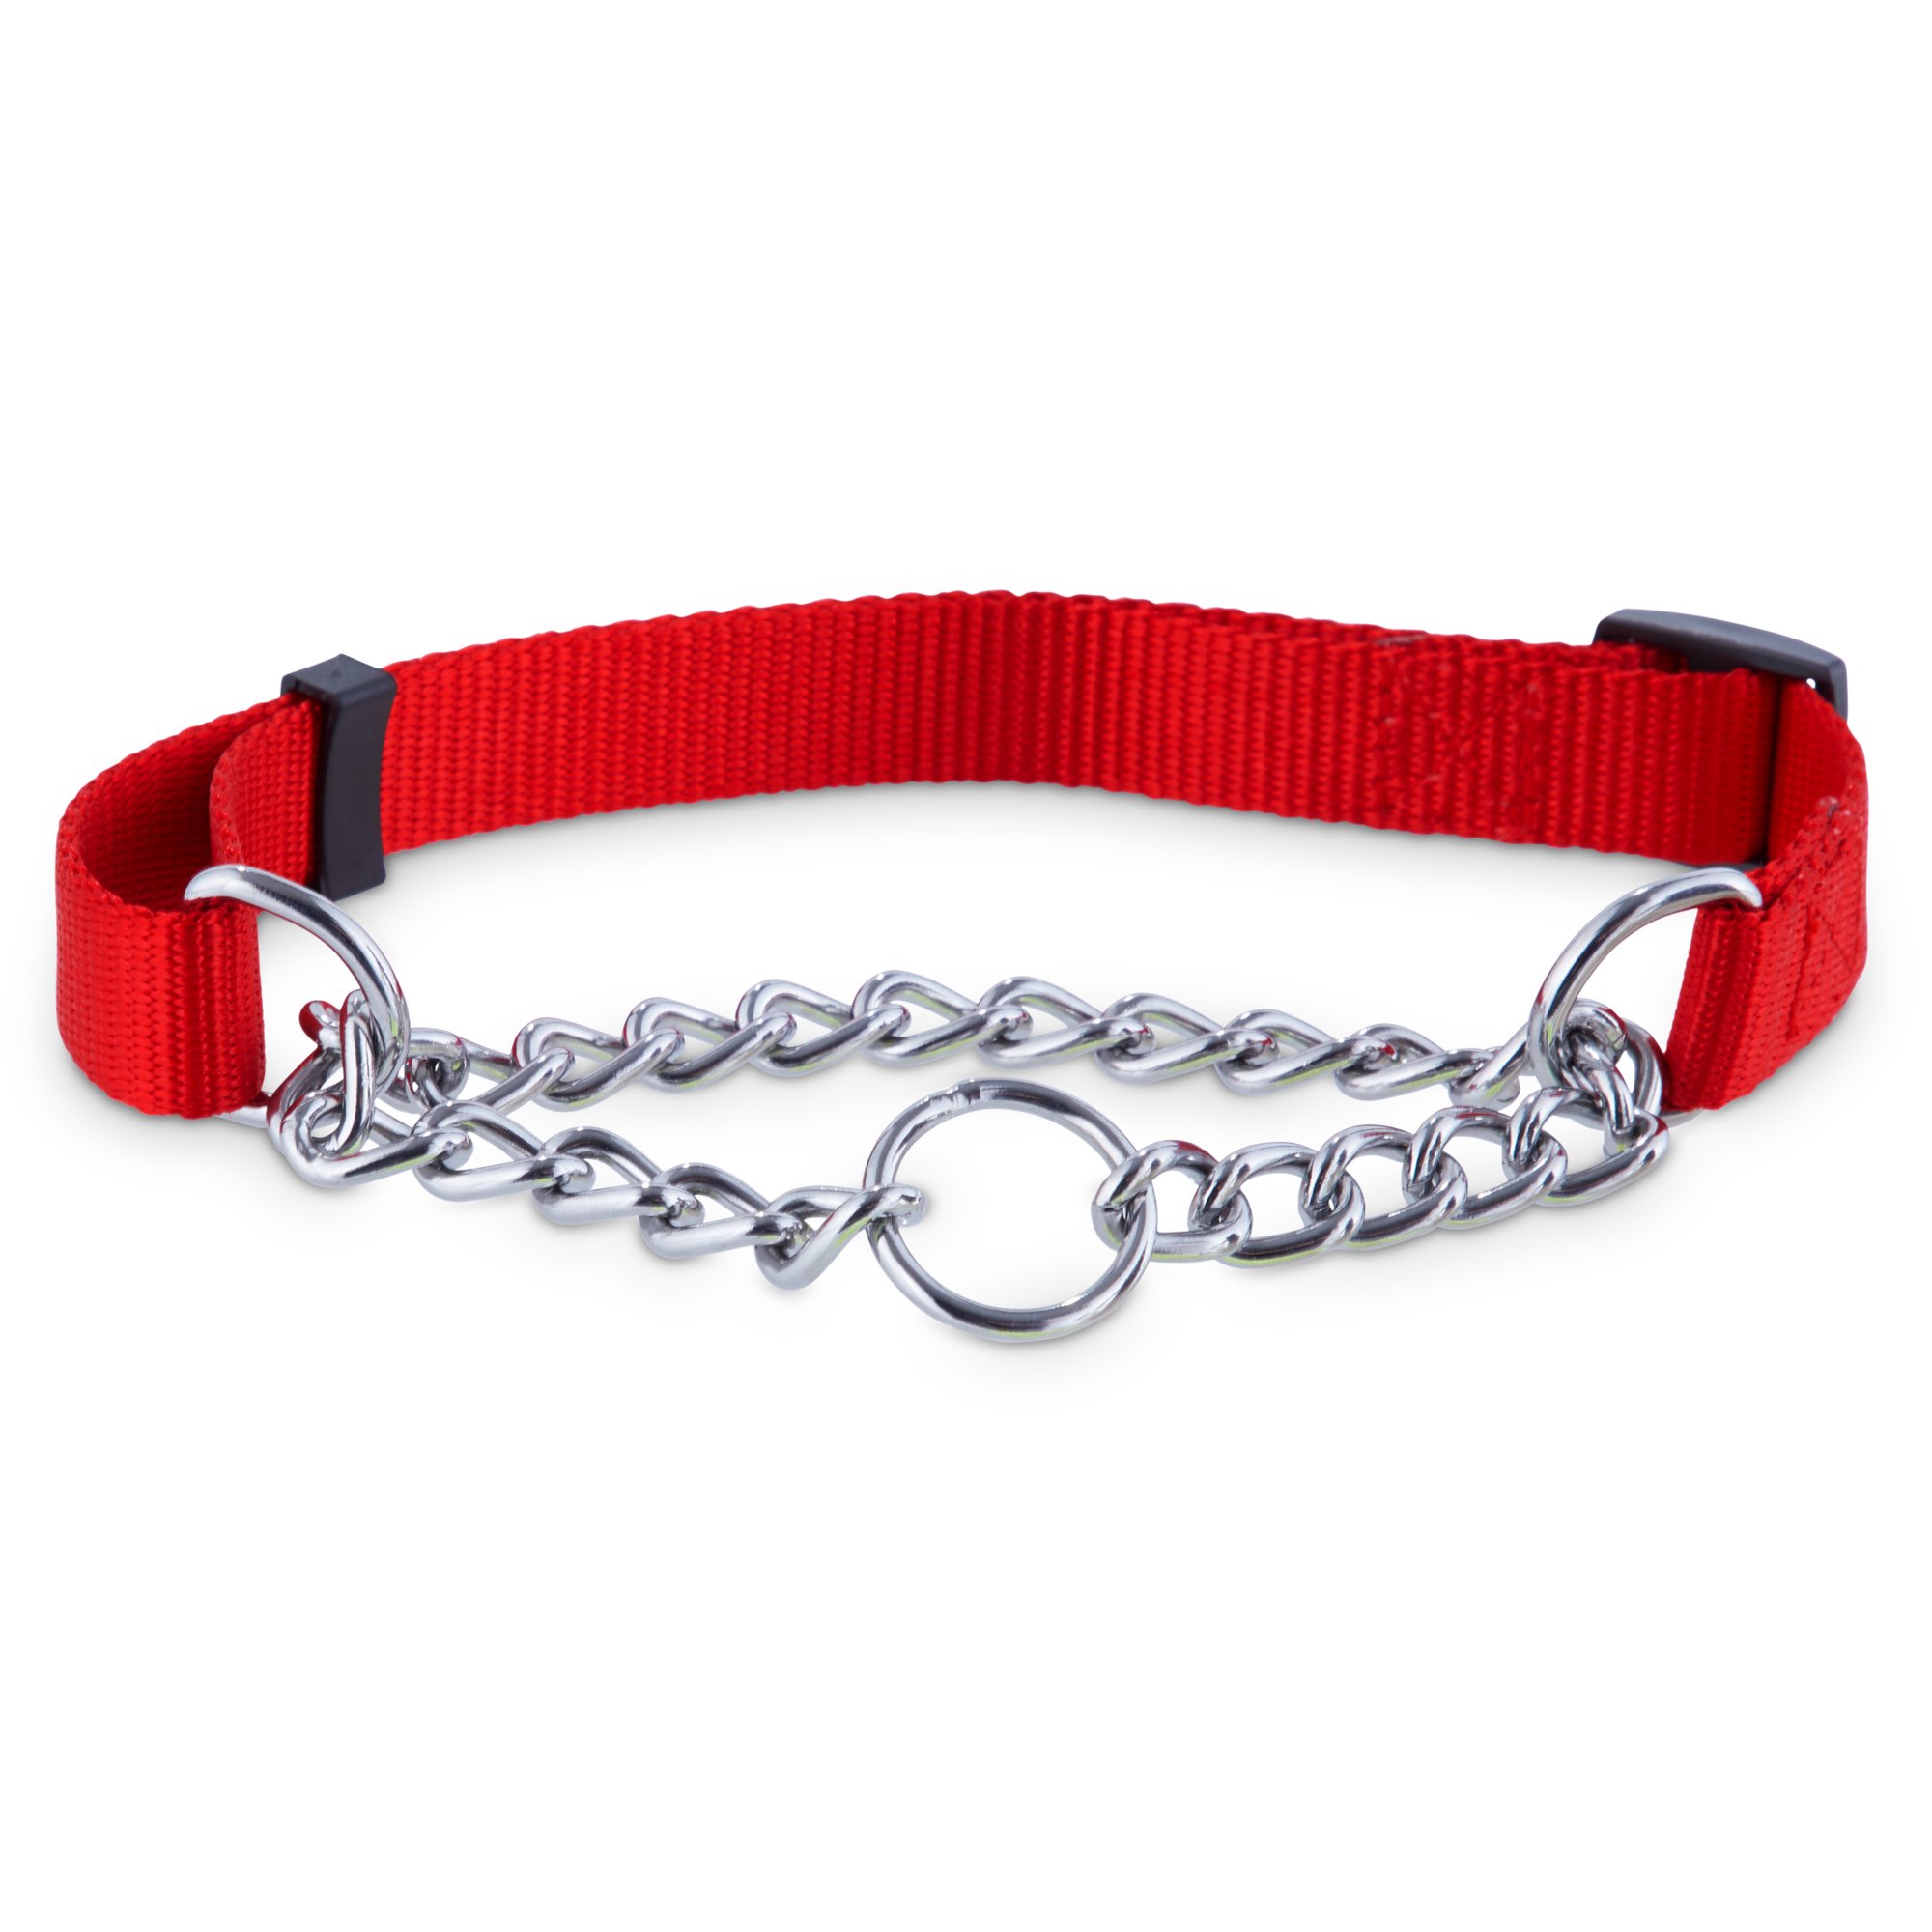 Petco Red Check Nylon and Chain Dog Collar | Petco